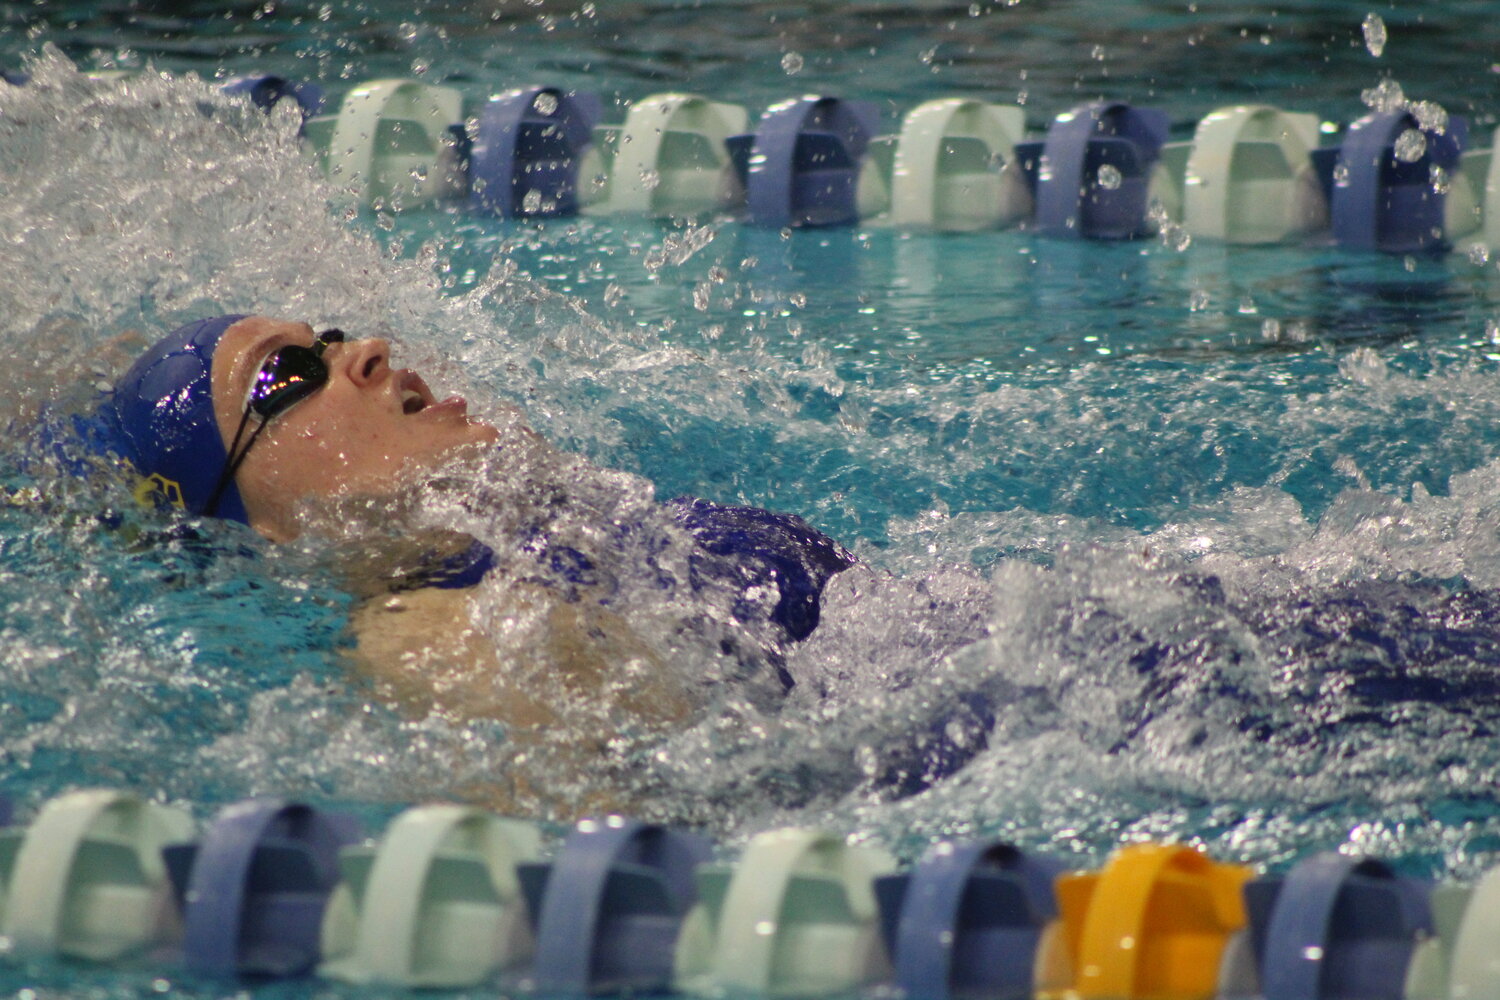 Ellie Walker earned a second place finish in the backstroke.